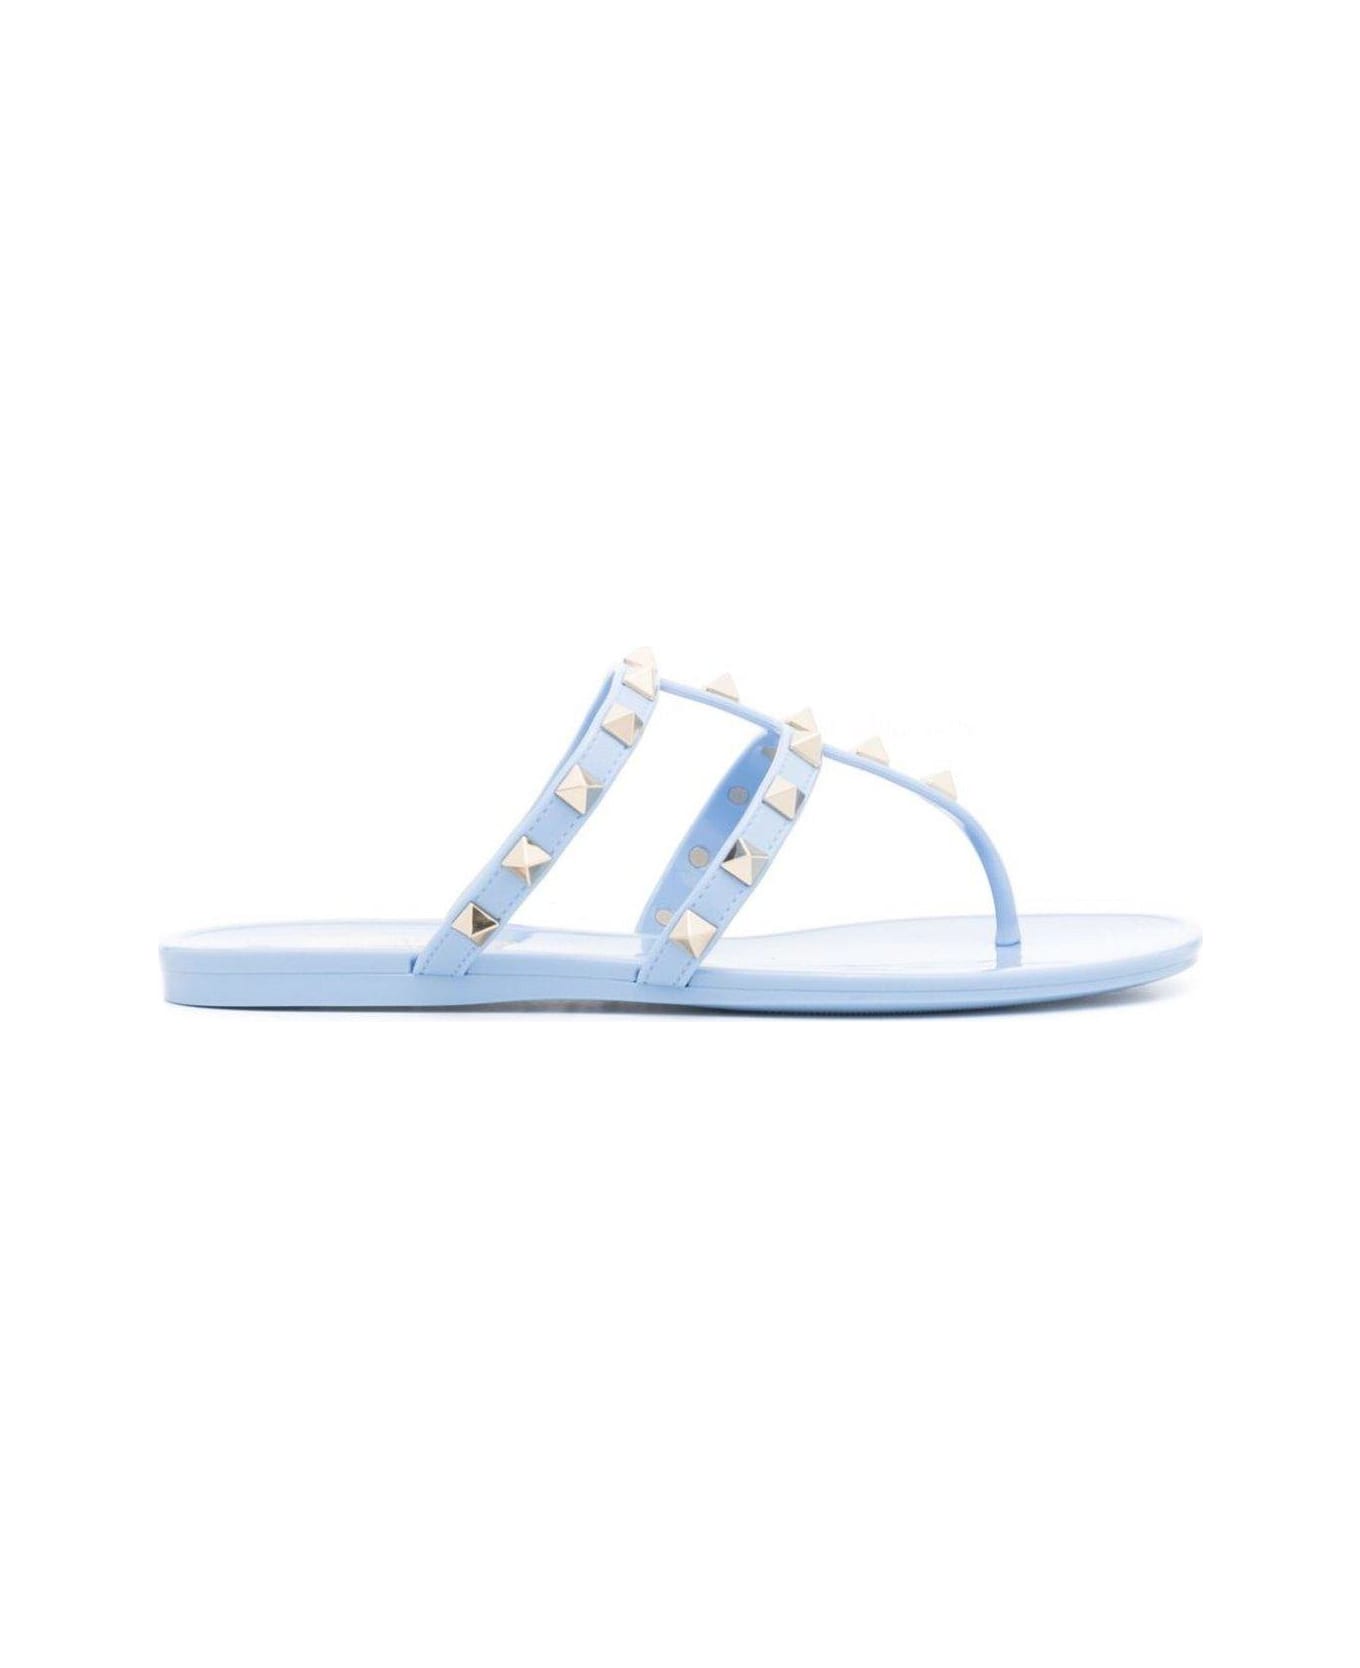 Valentino Garavani Garavani Rockstud Open Toe Flat Sandals - Clear Blue サンダル